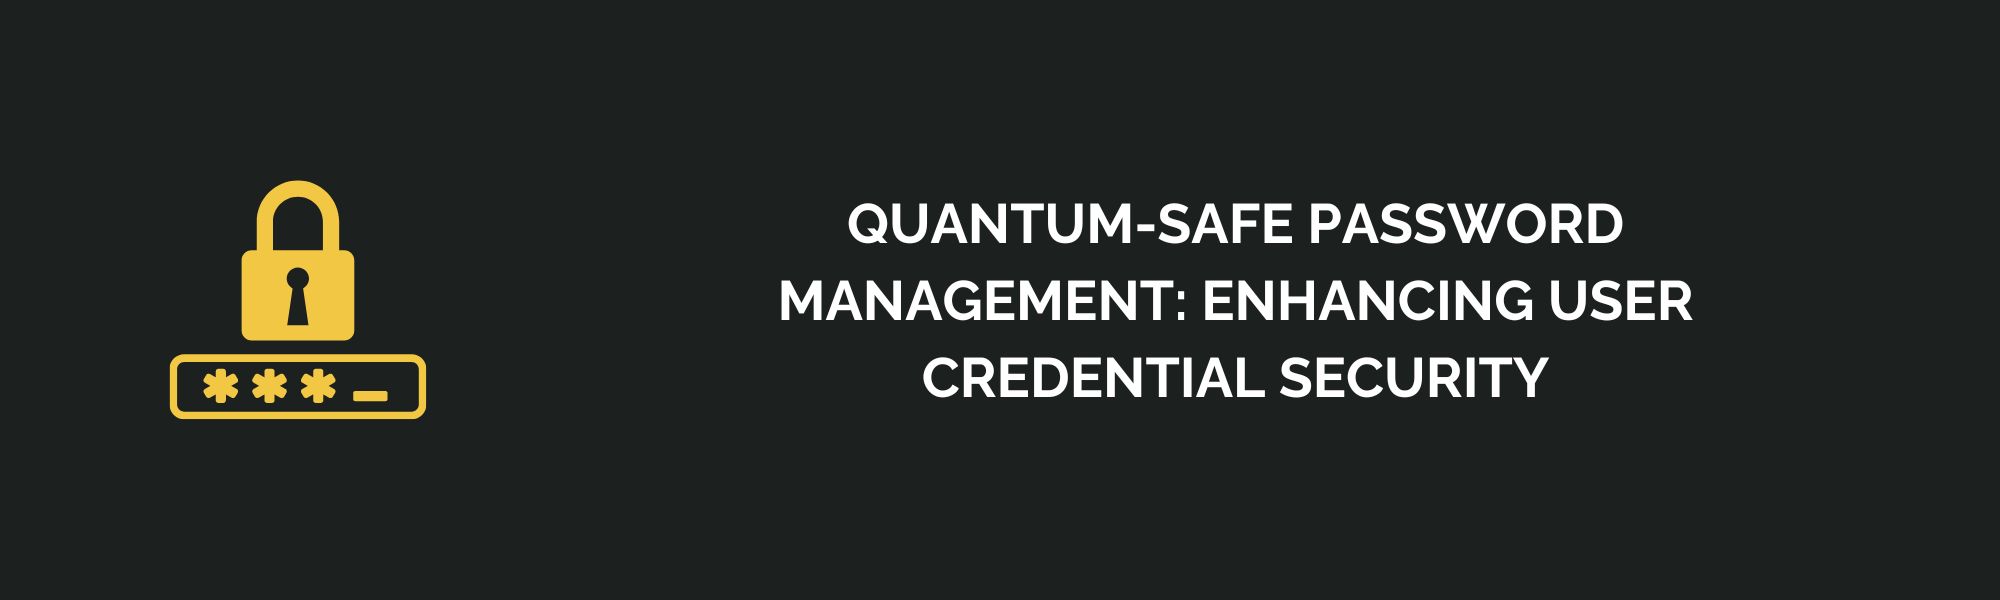 Quantum-Safe Password Management: Enhancing User Credential Security